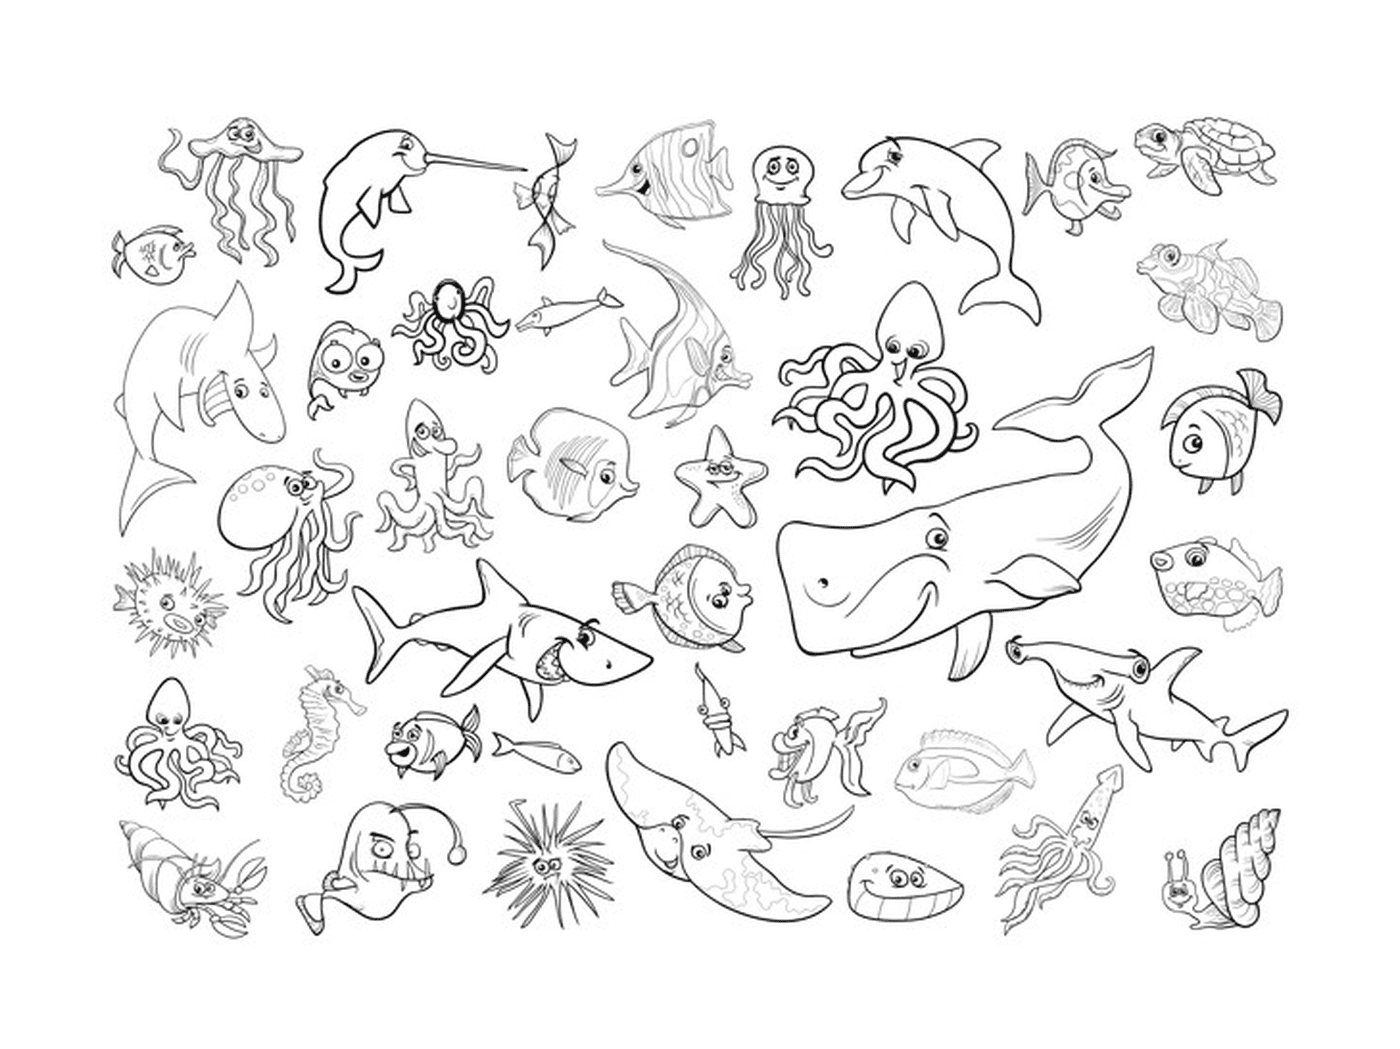  مجموعة من الحيوانات البحرية العديدة 